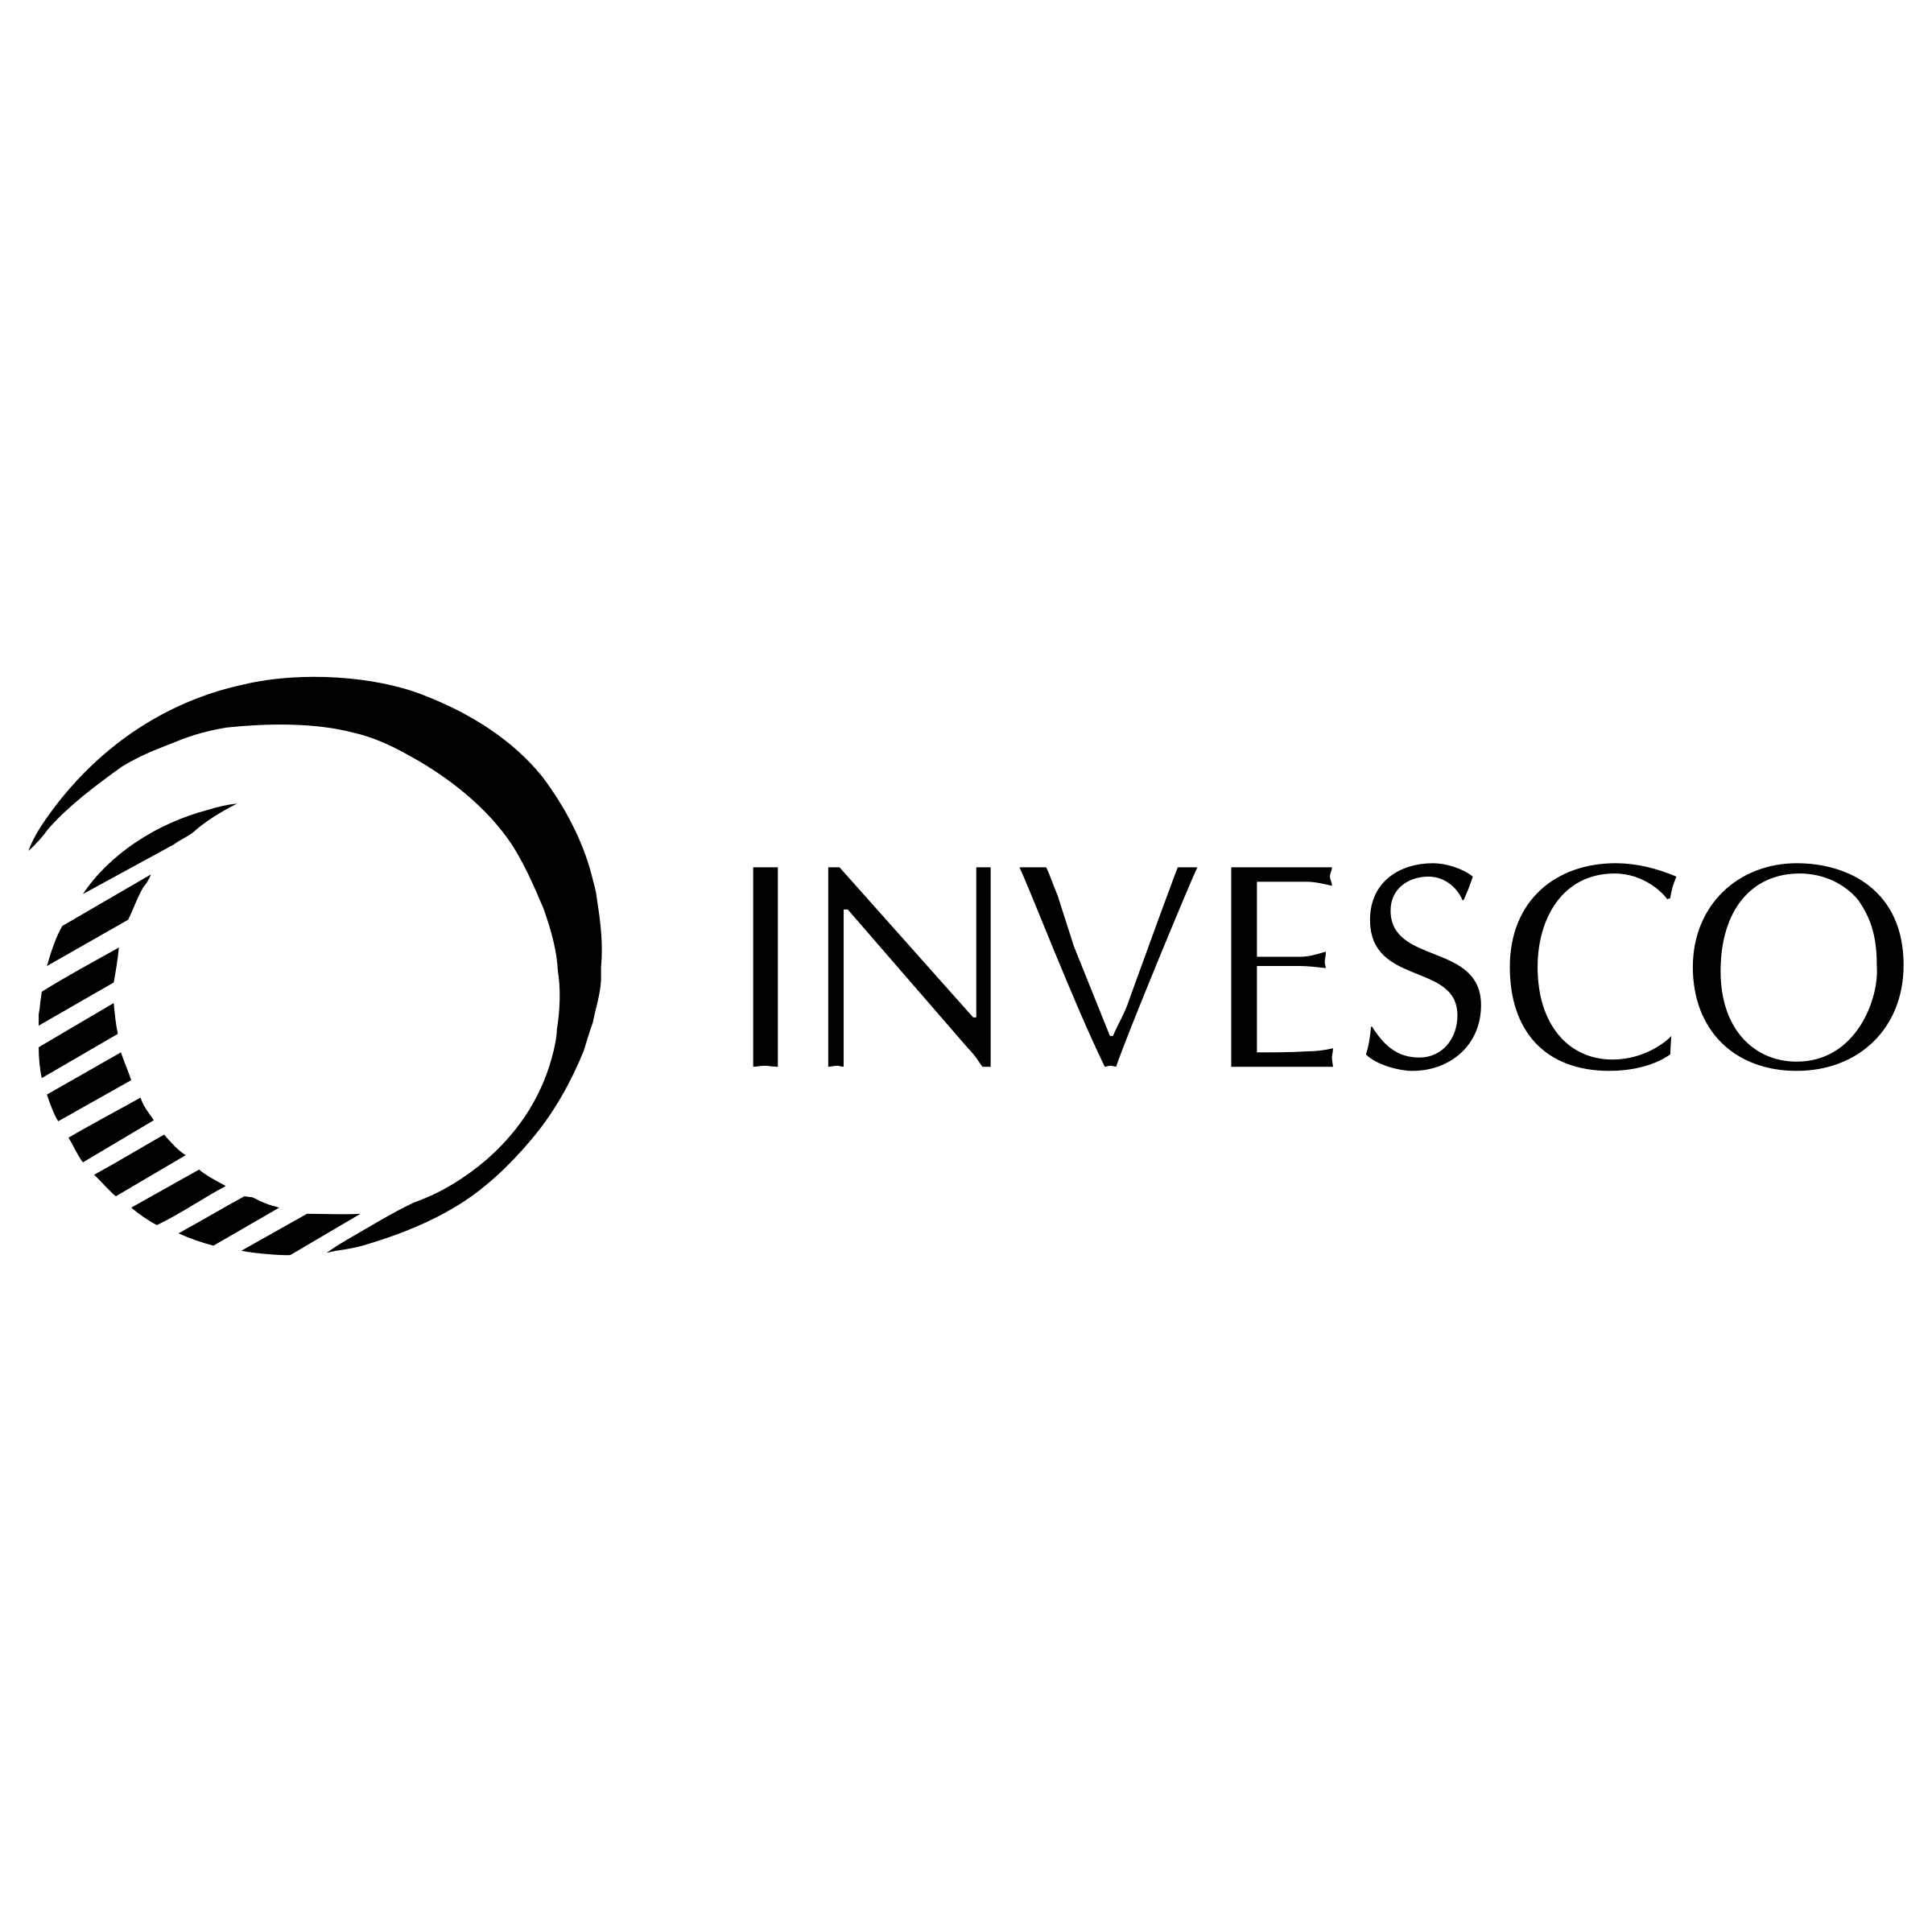 Invesco Logo - Invesco Logo PNG Transparent & SVG Vector